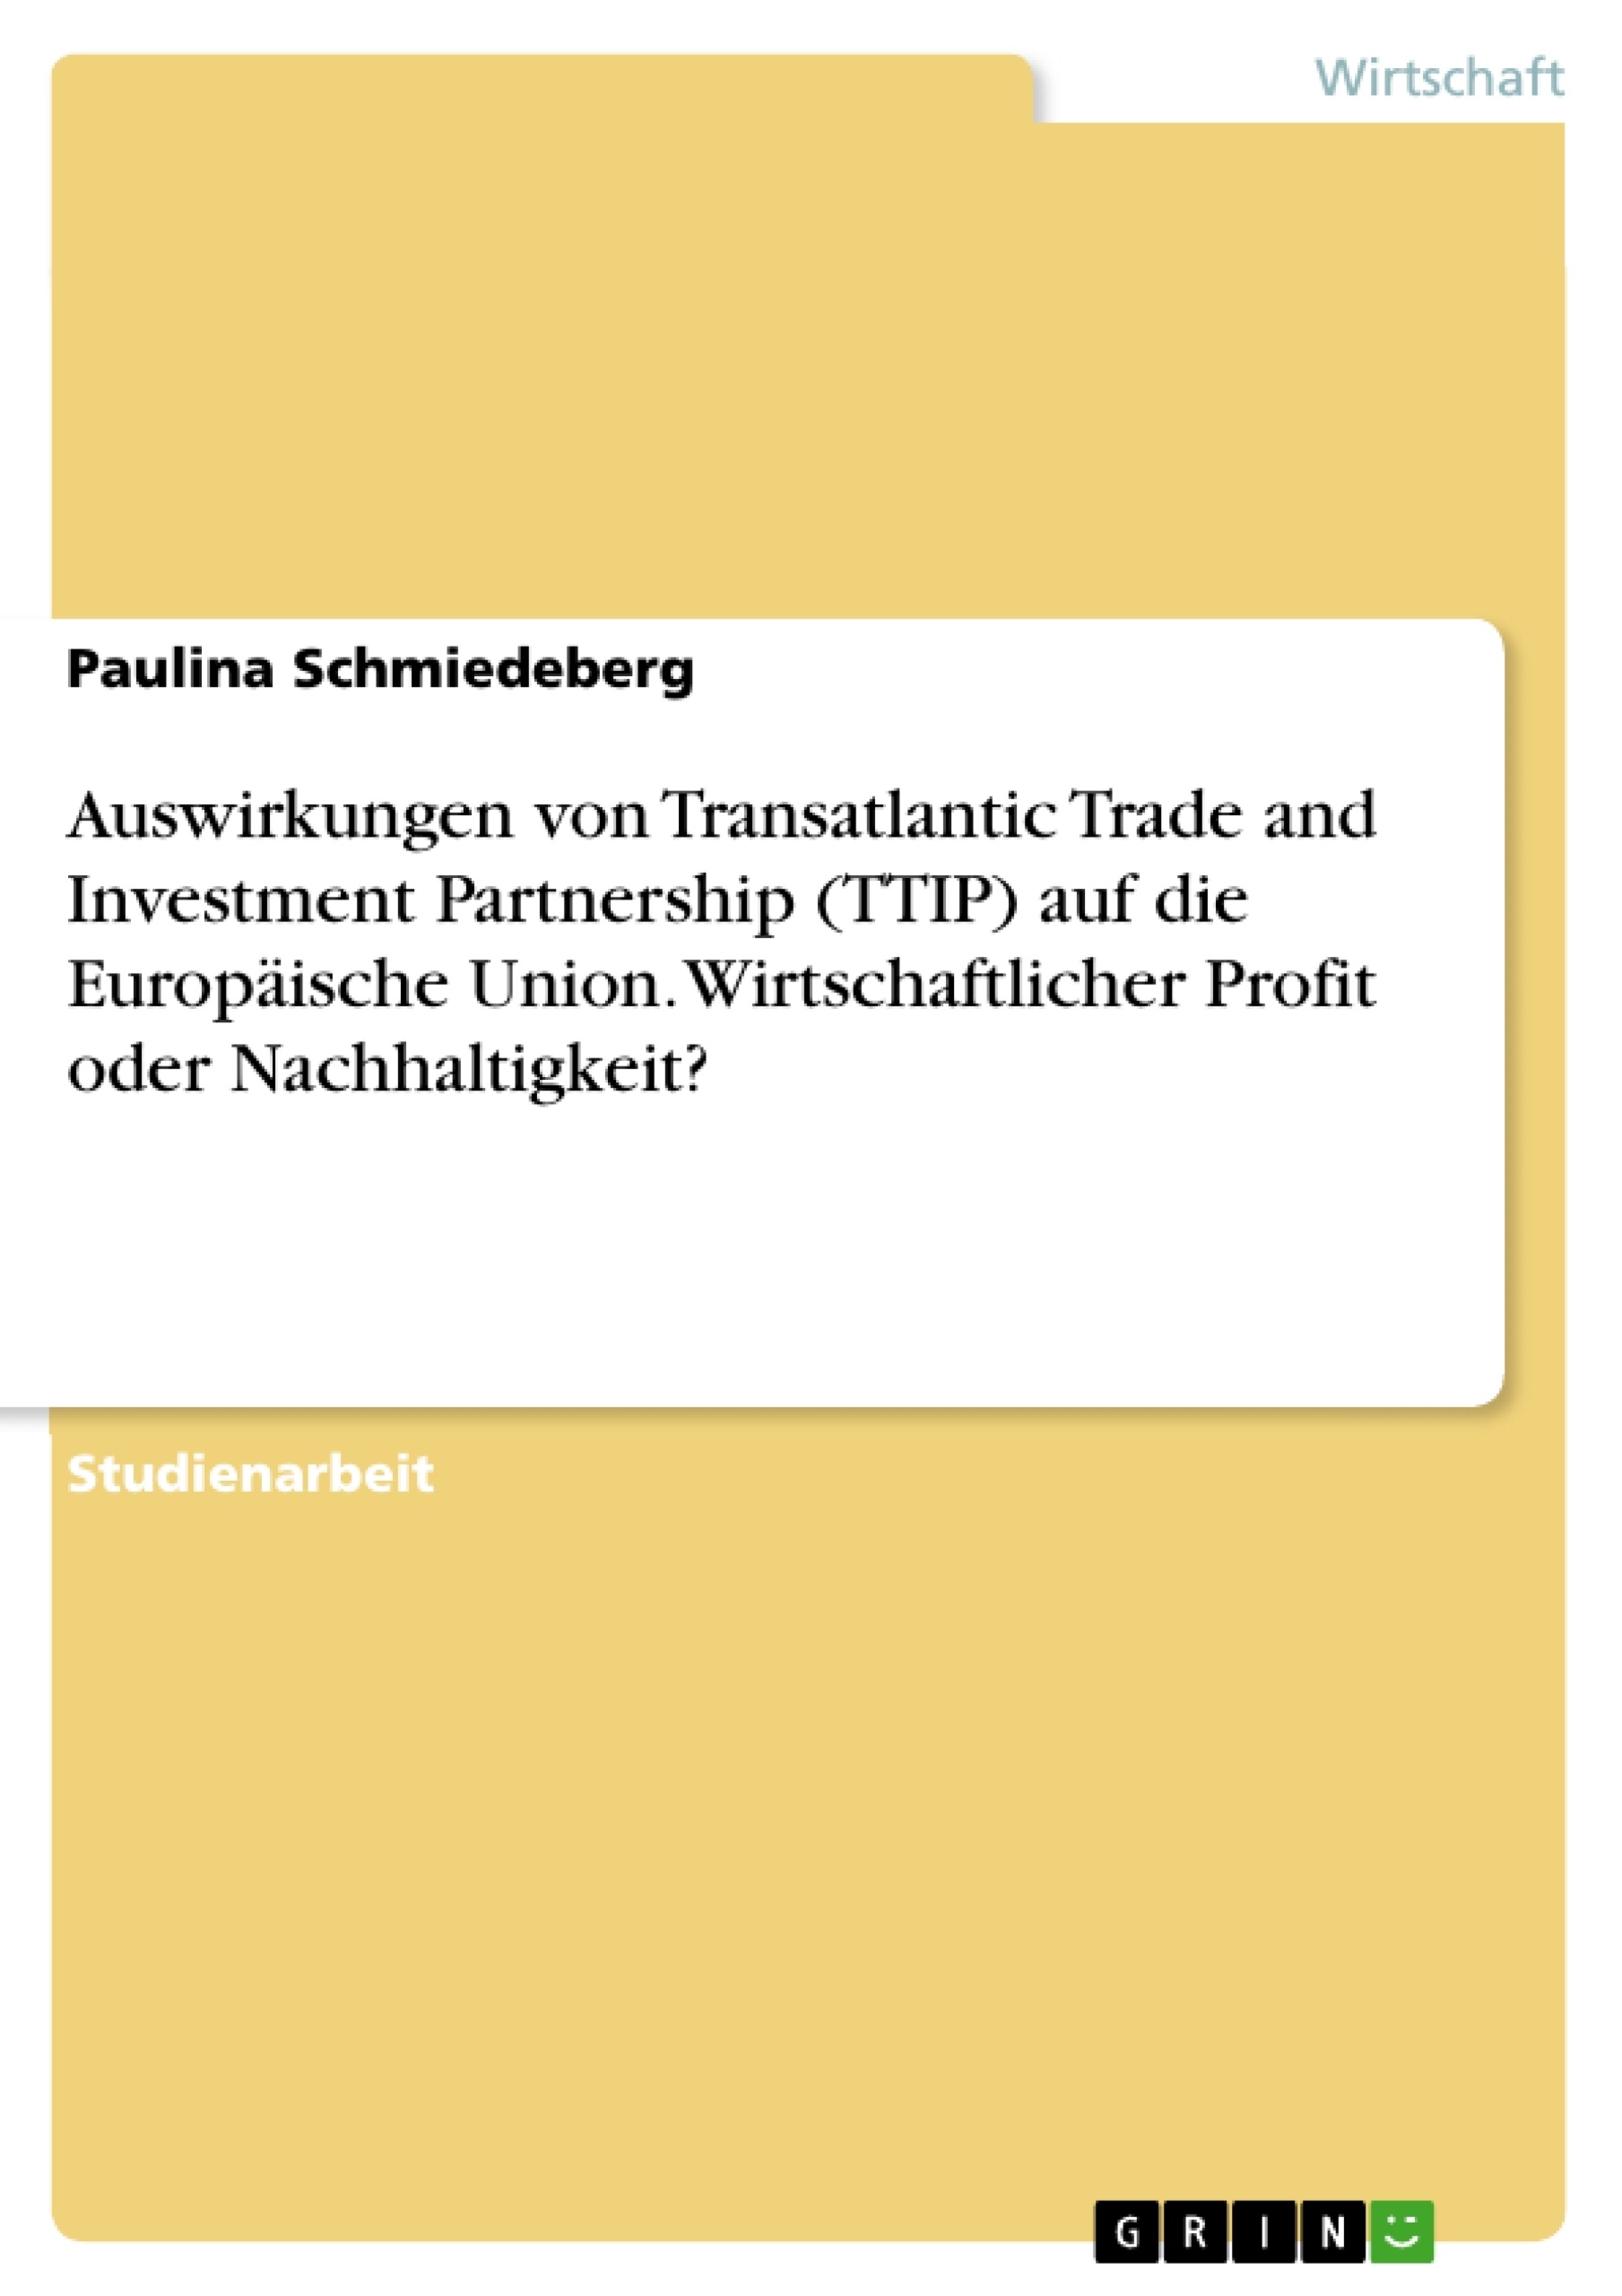 Titel: Auswirkungen von Transatlantic Trade and Investment Partnership (TTIP) auf die Europäische Union. Wirtschaftlicher Profit oder Nachhaltigkeit?